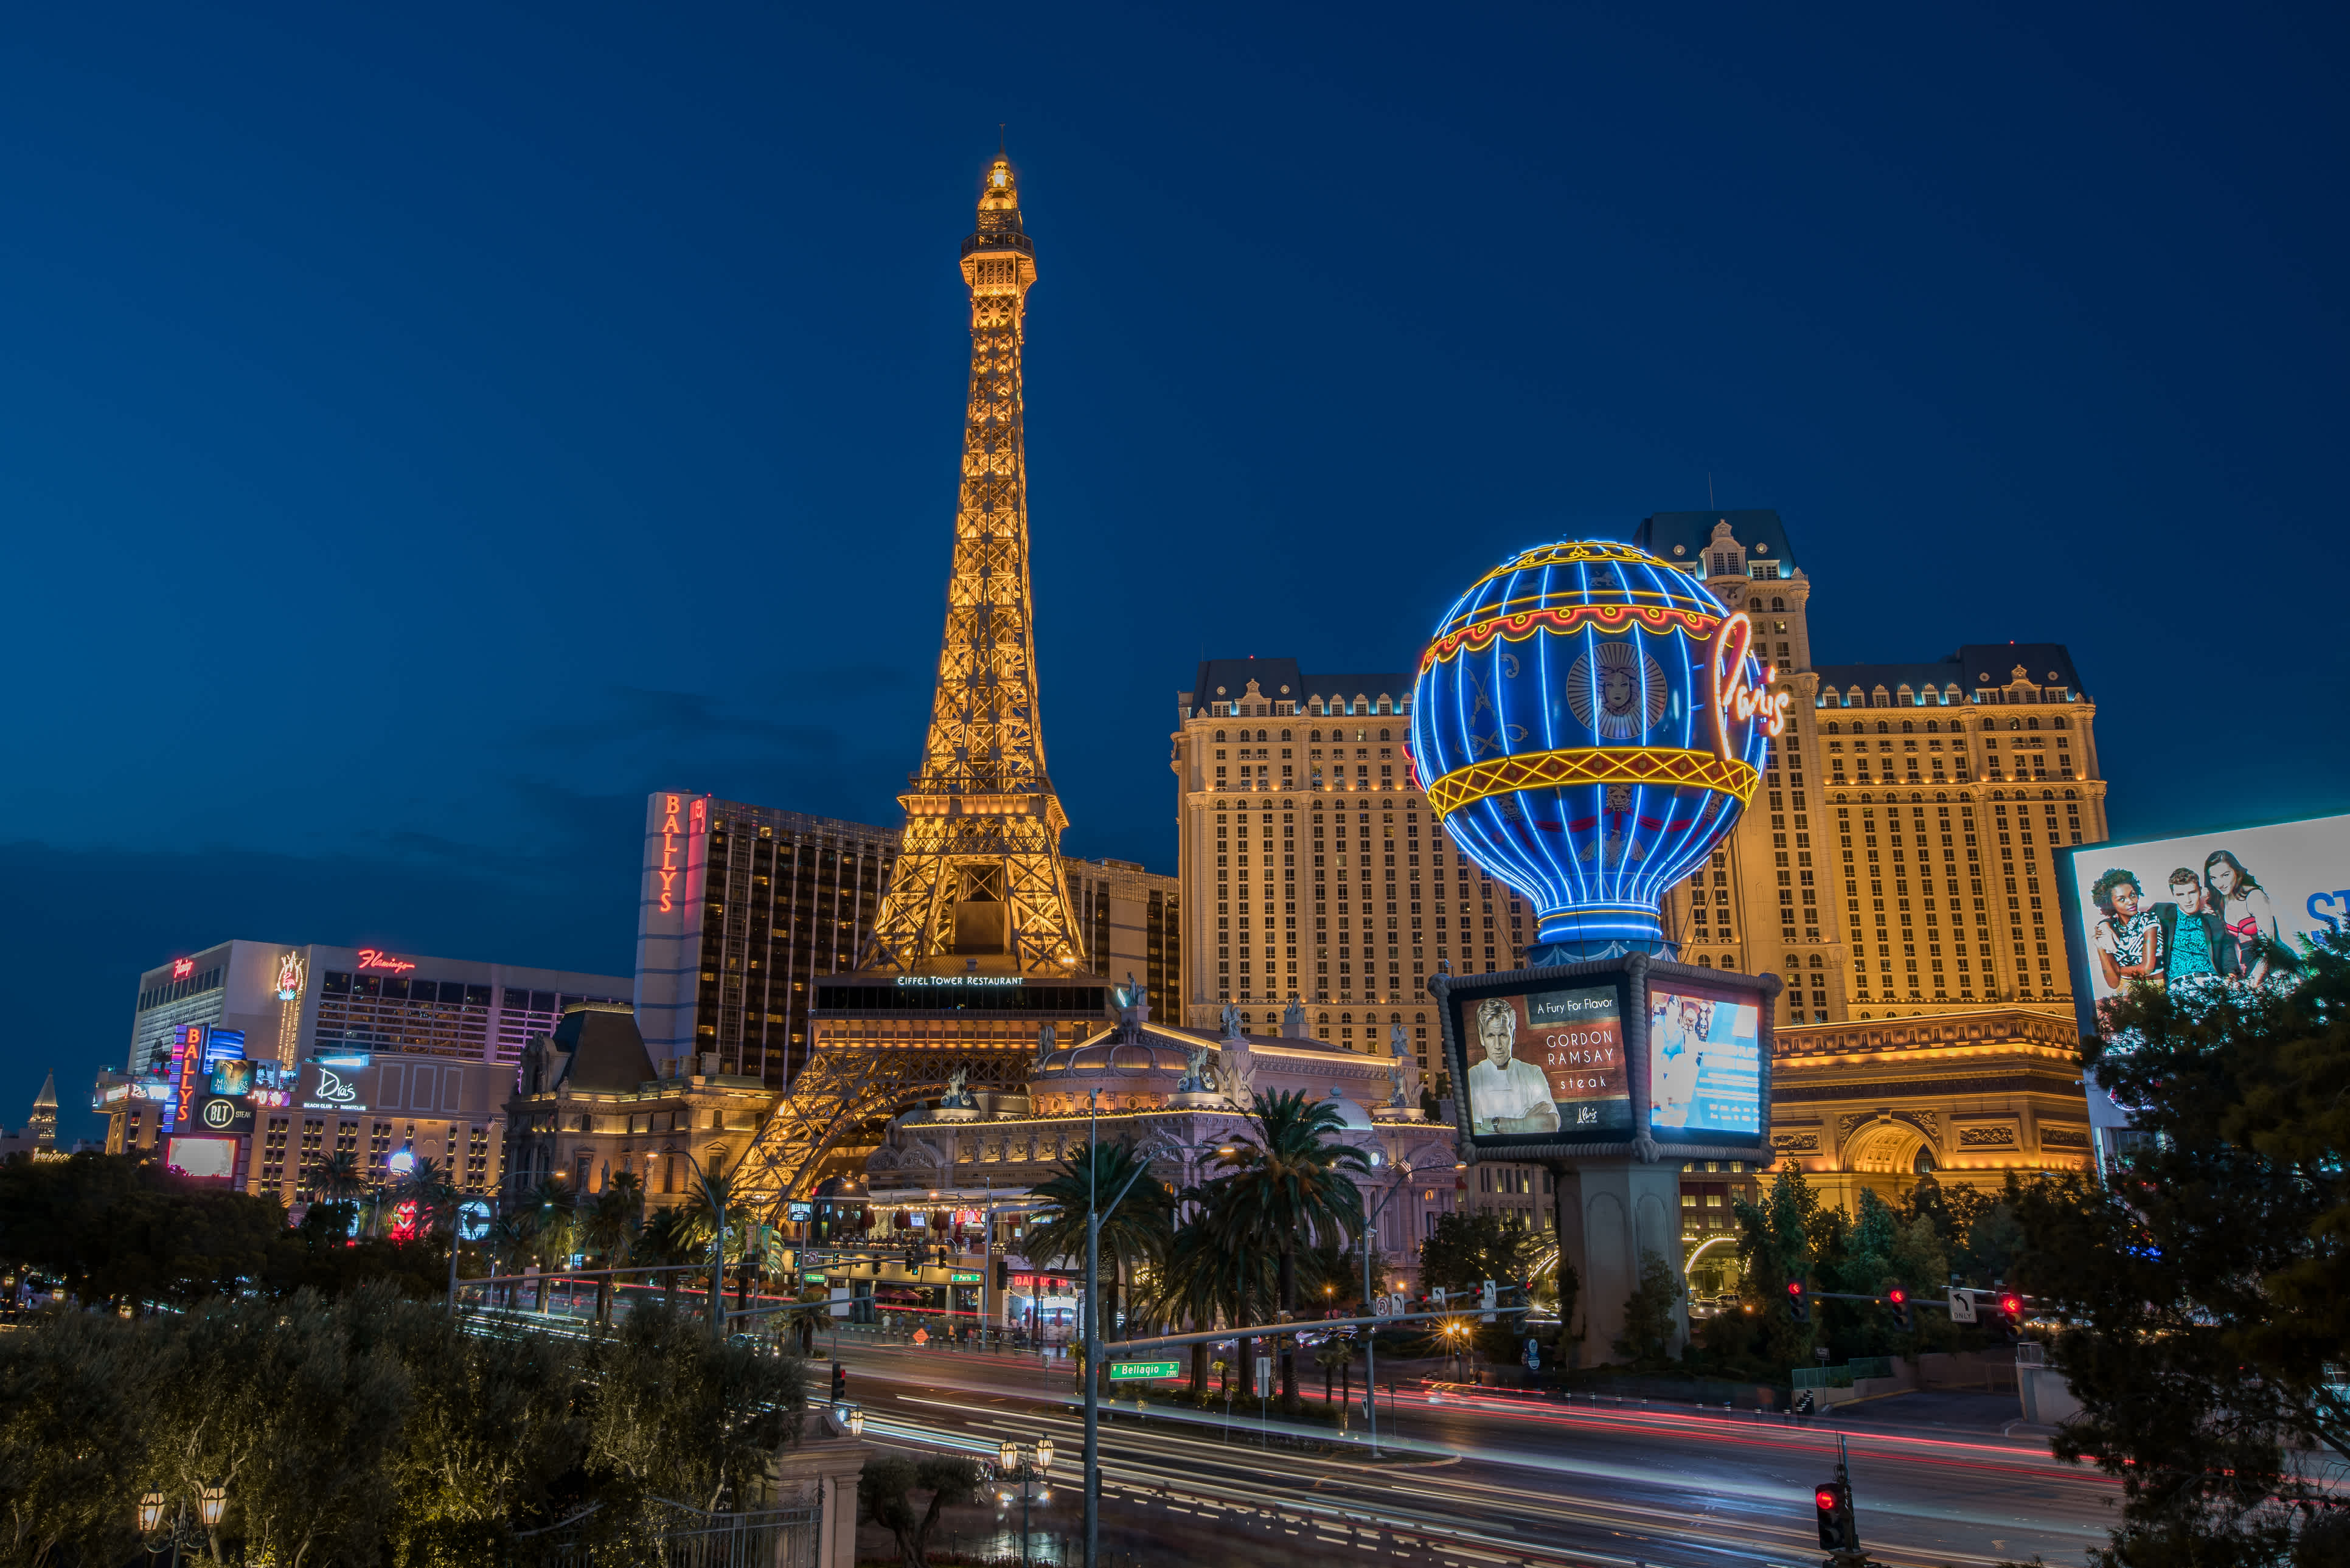 Découvrez une surprenante copie de la célèbre Tour Eiffel devant l'Hôtel Paris pendant votre voyage à Las Vegas